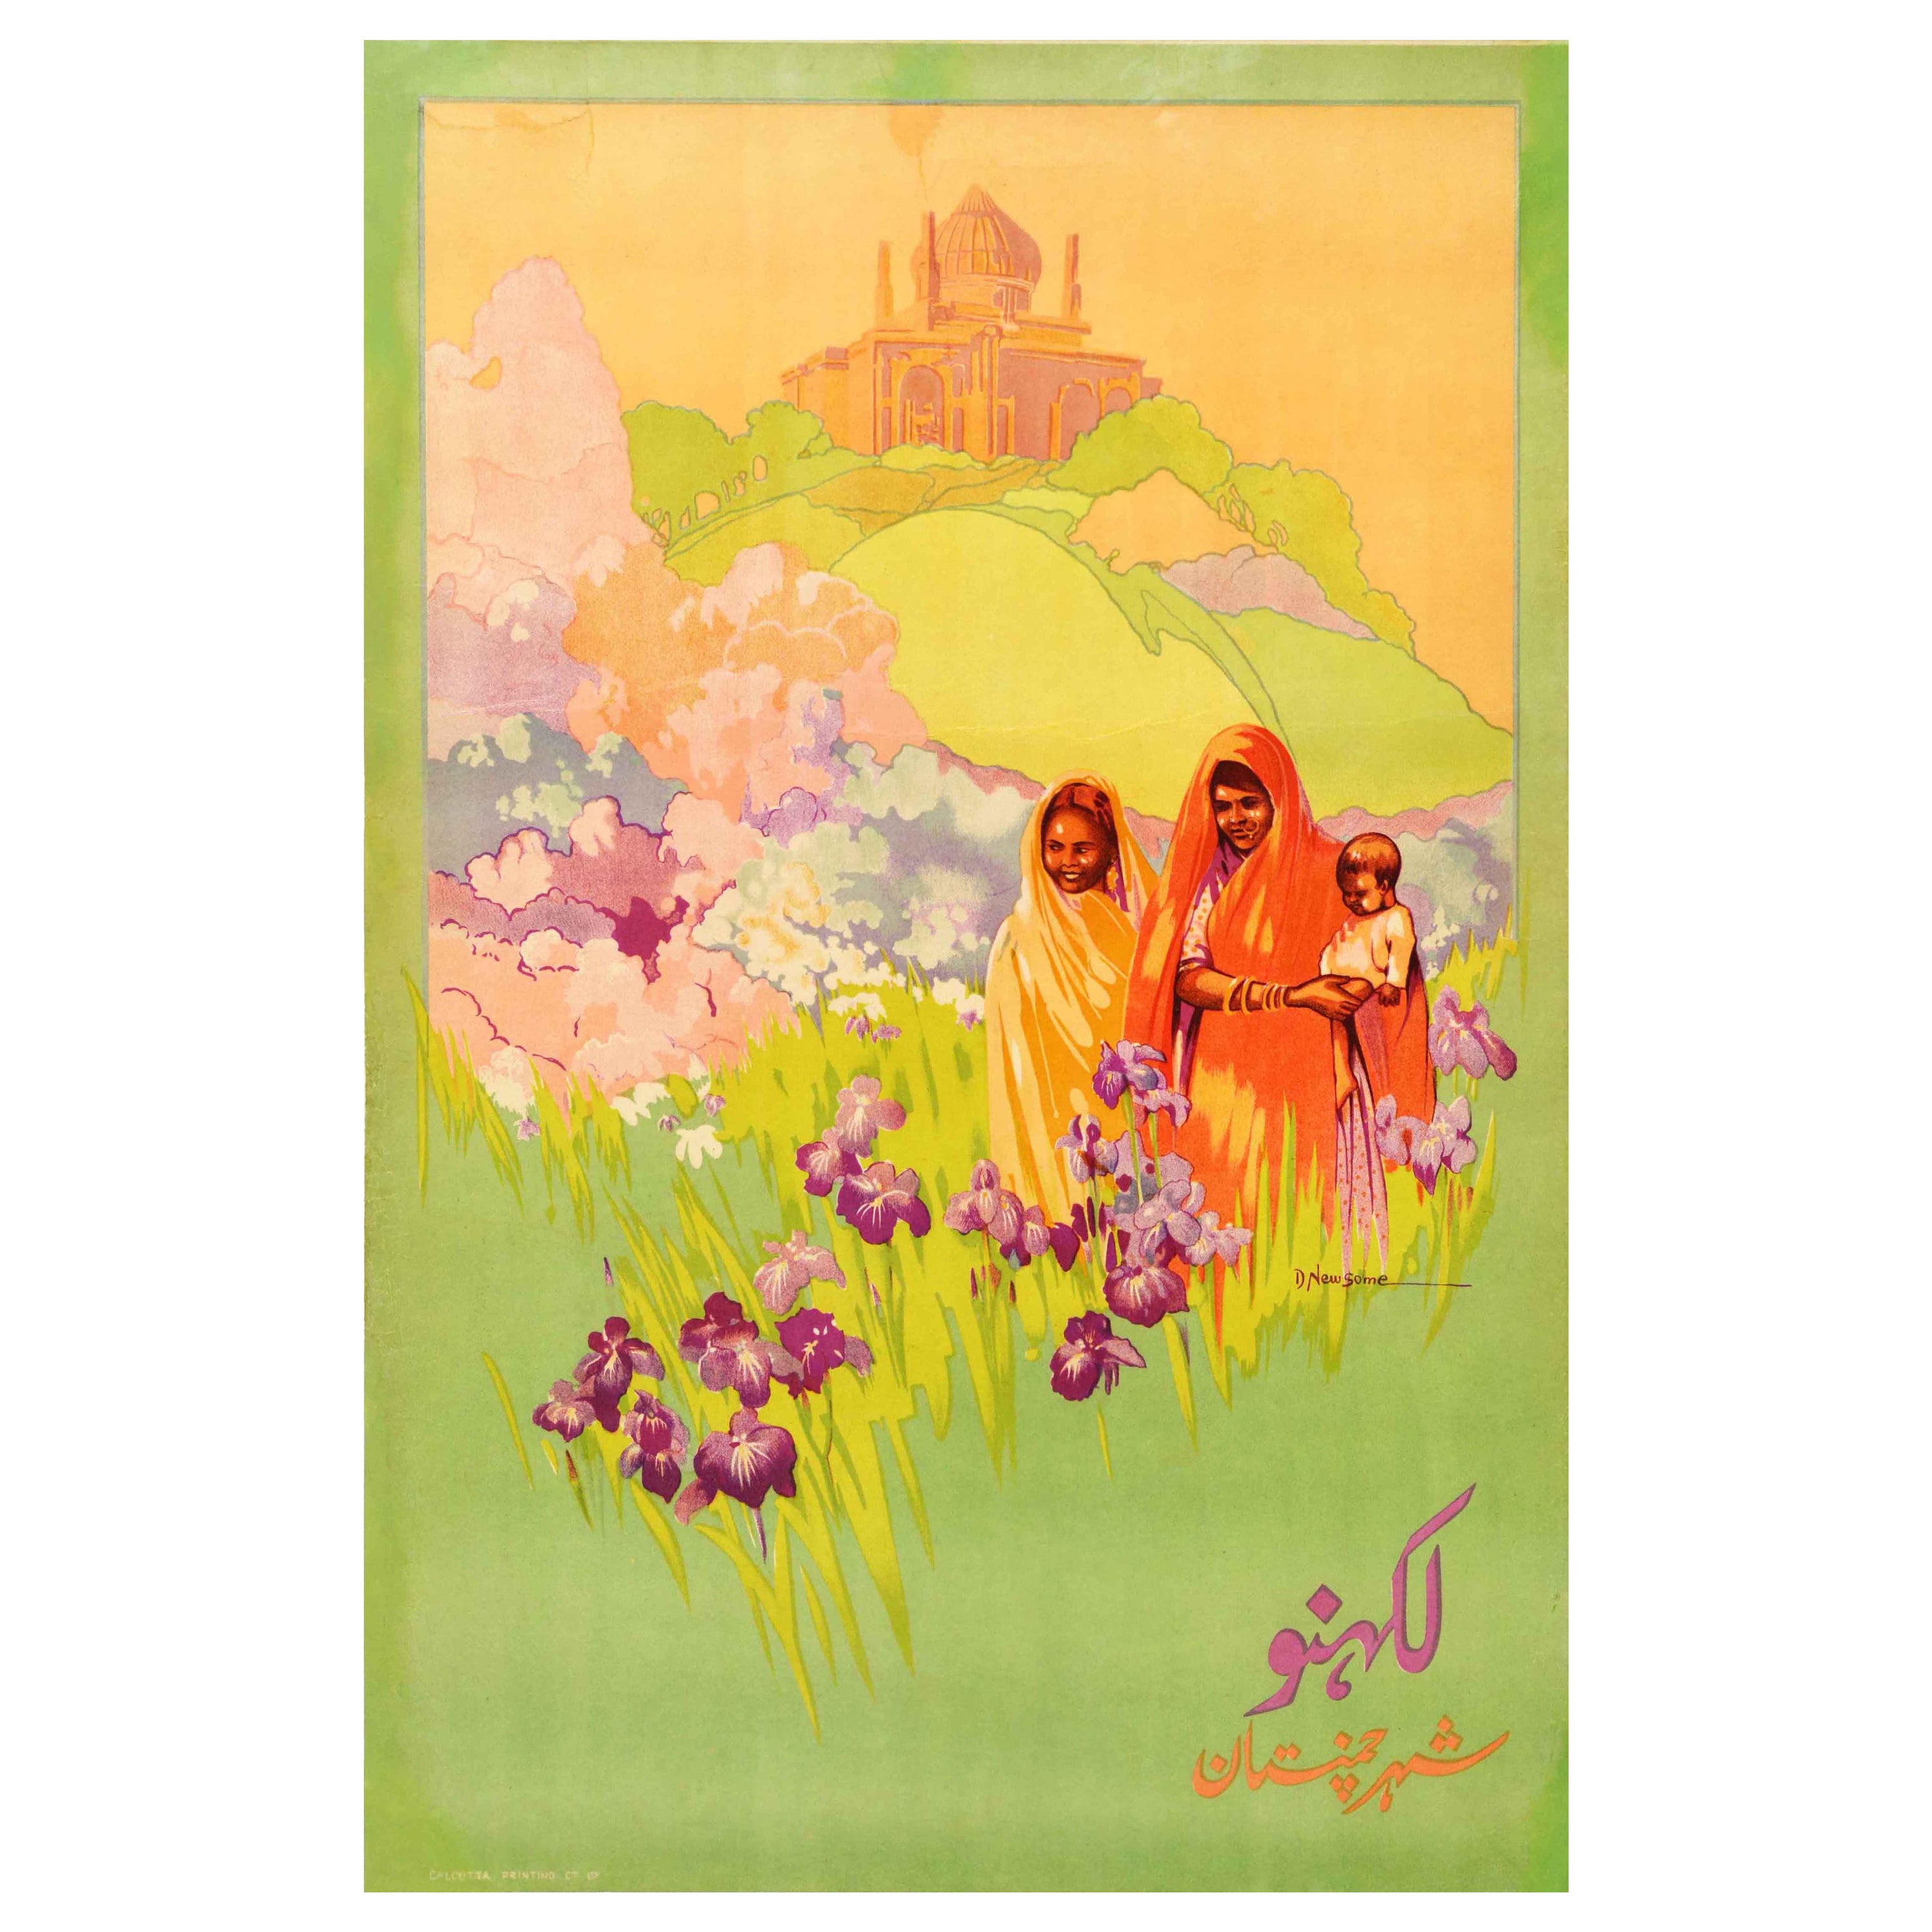 Original Vintage-Reiseplakat Lucknow, Indien, Gärten mit Iris-Blumen Chota Imambara